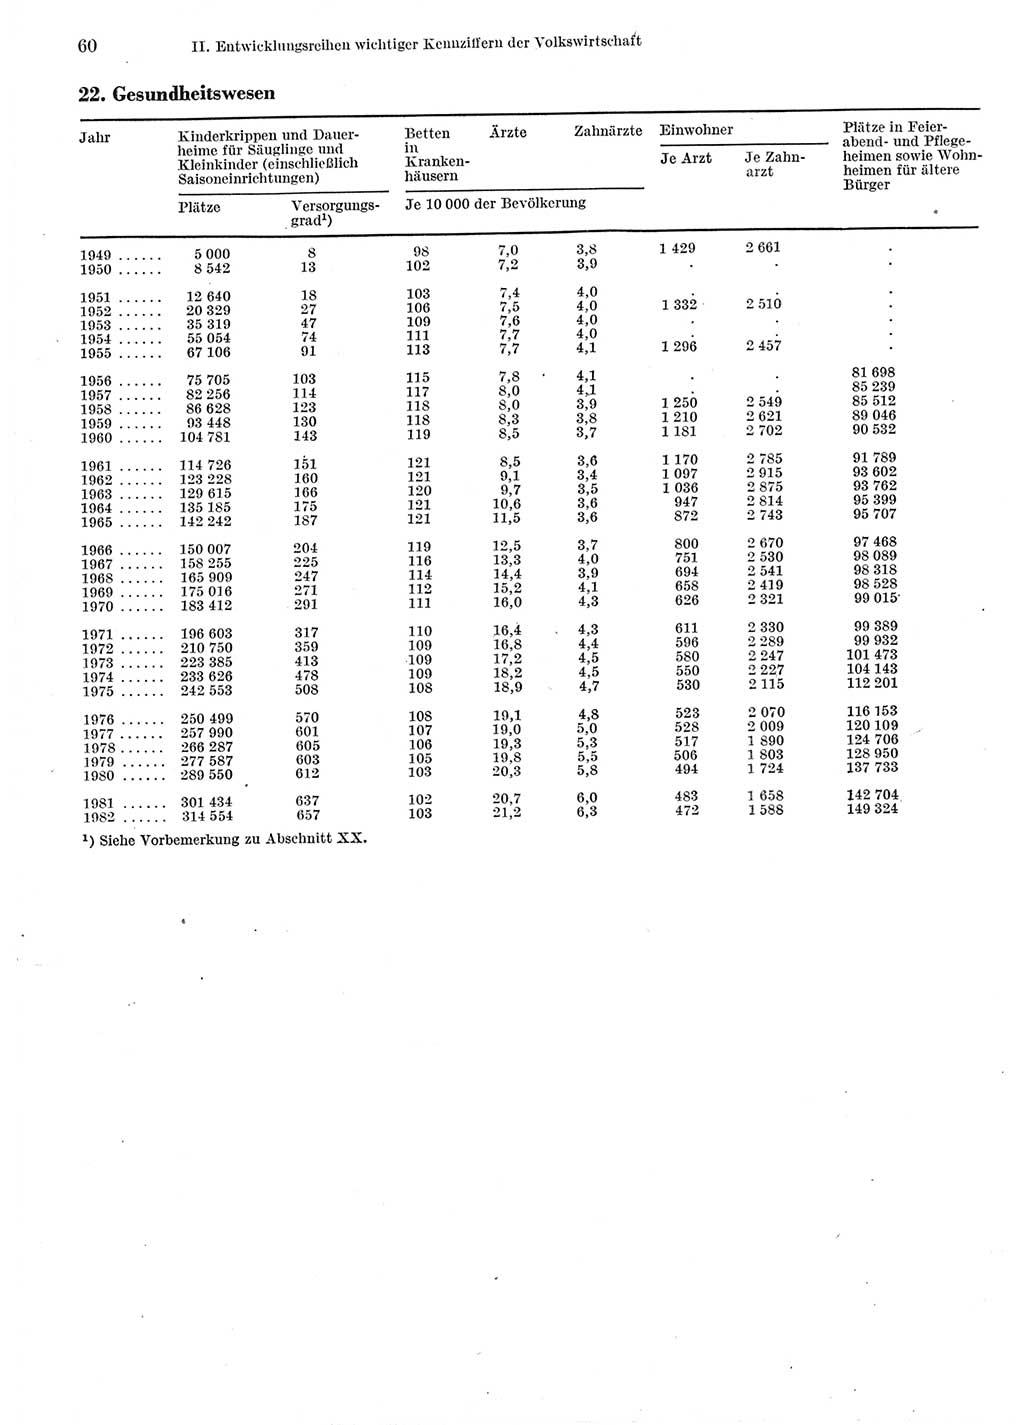 Statistisches Jahrbuch der Deutschen Demokratischen Republik (DDR) 1983, Seite 60 (Stat. Jb. DDR 1983, S. 60)